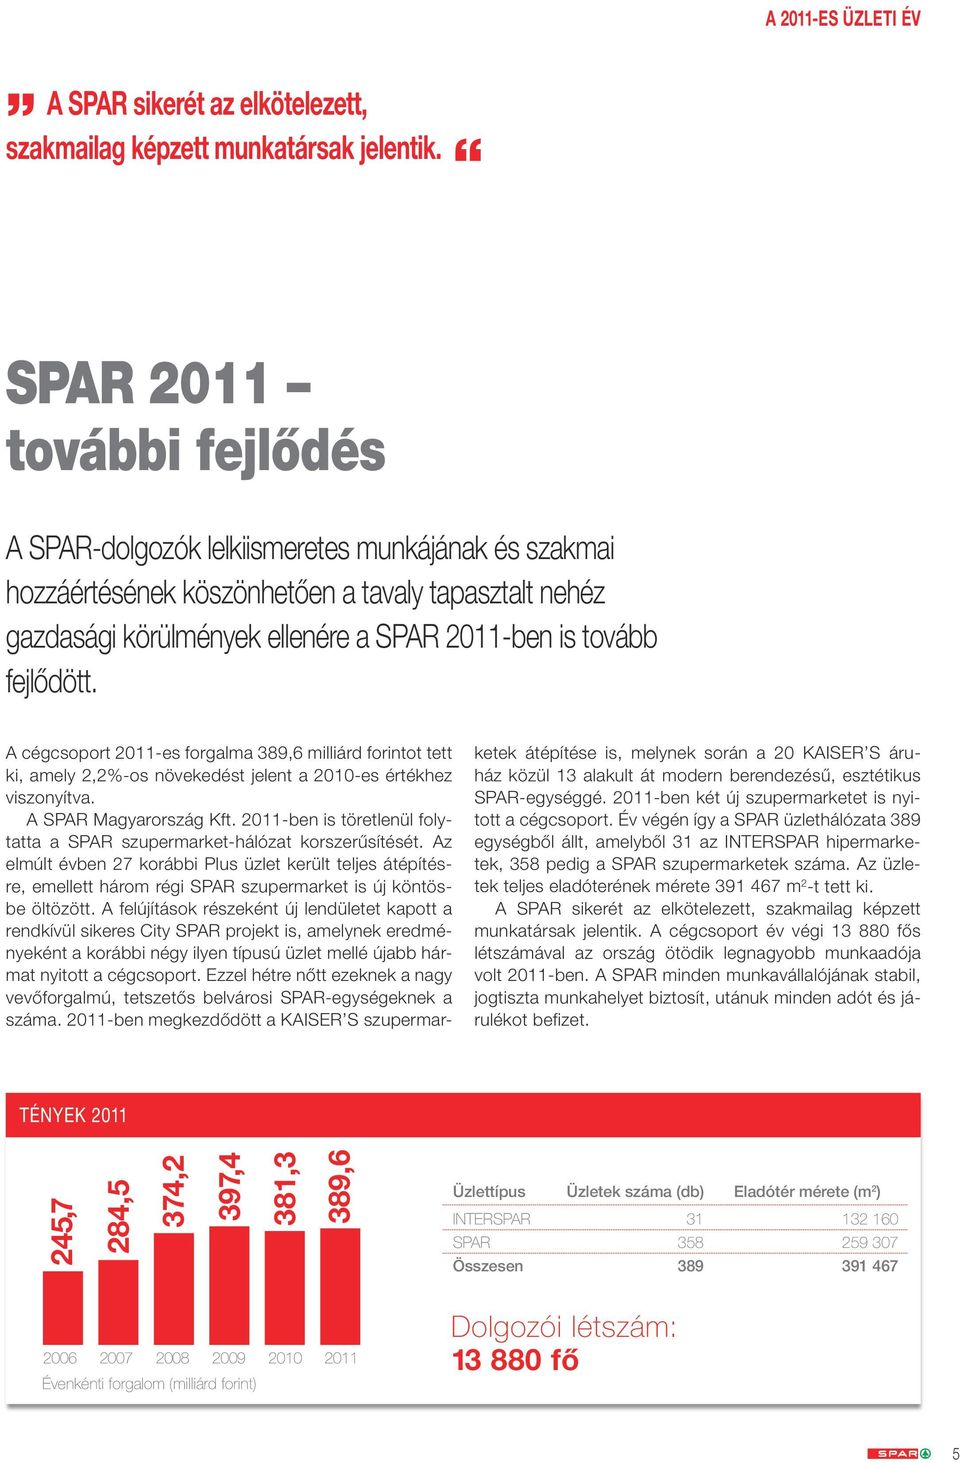 fejlődött. A cégcsoport 2011-es forgalma 389,6 milliárd forintot tett ki, amely 2,2%-os növekedést jelent a 2010-es értékhez viszonyítva. A SPAR Magyarország Kft.